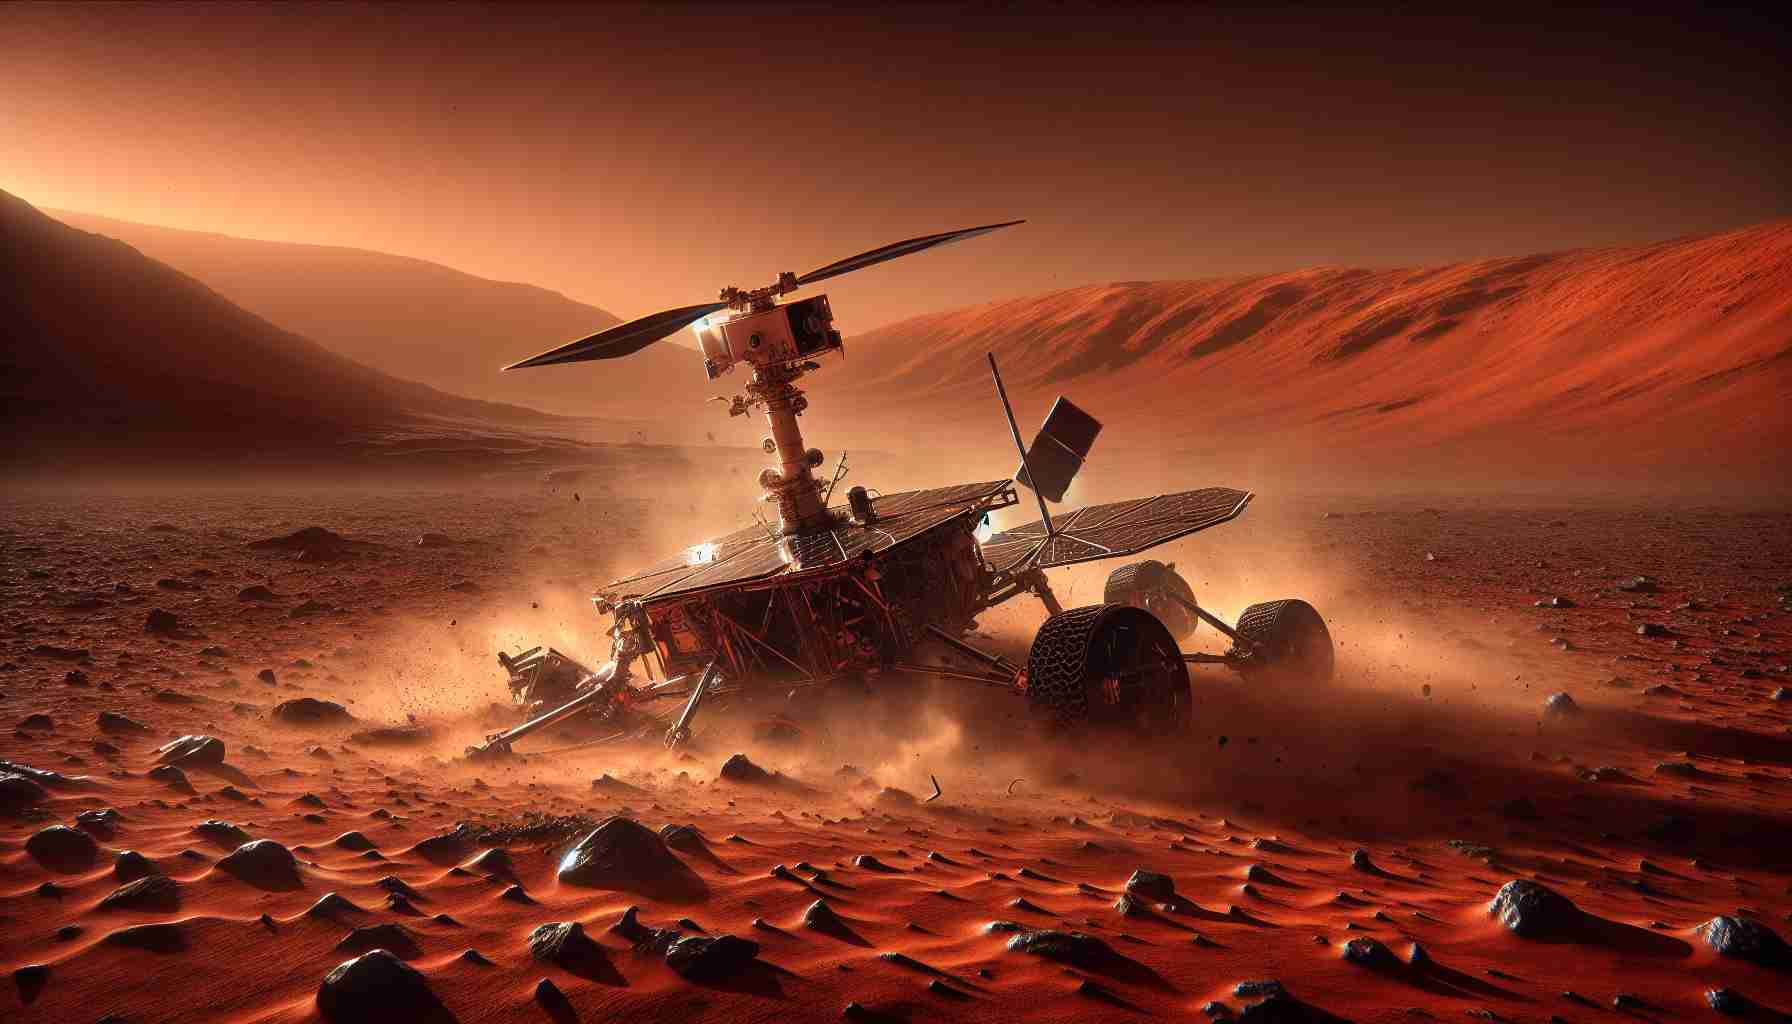 El fin de la misión en Marte del Ingenuity se debió a un problema en el aterrizaje.